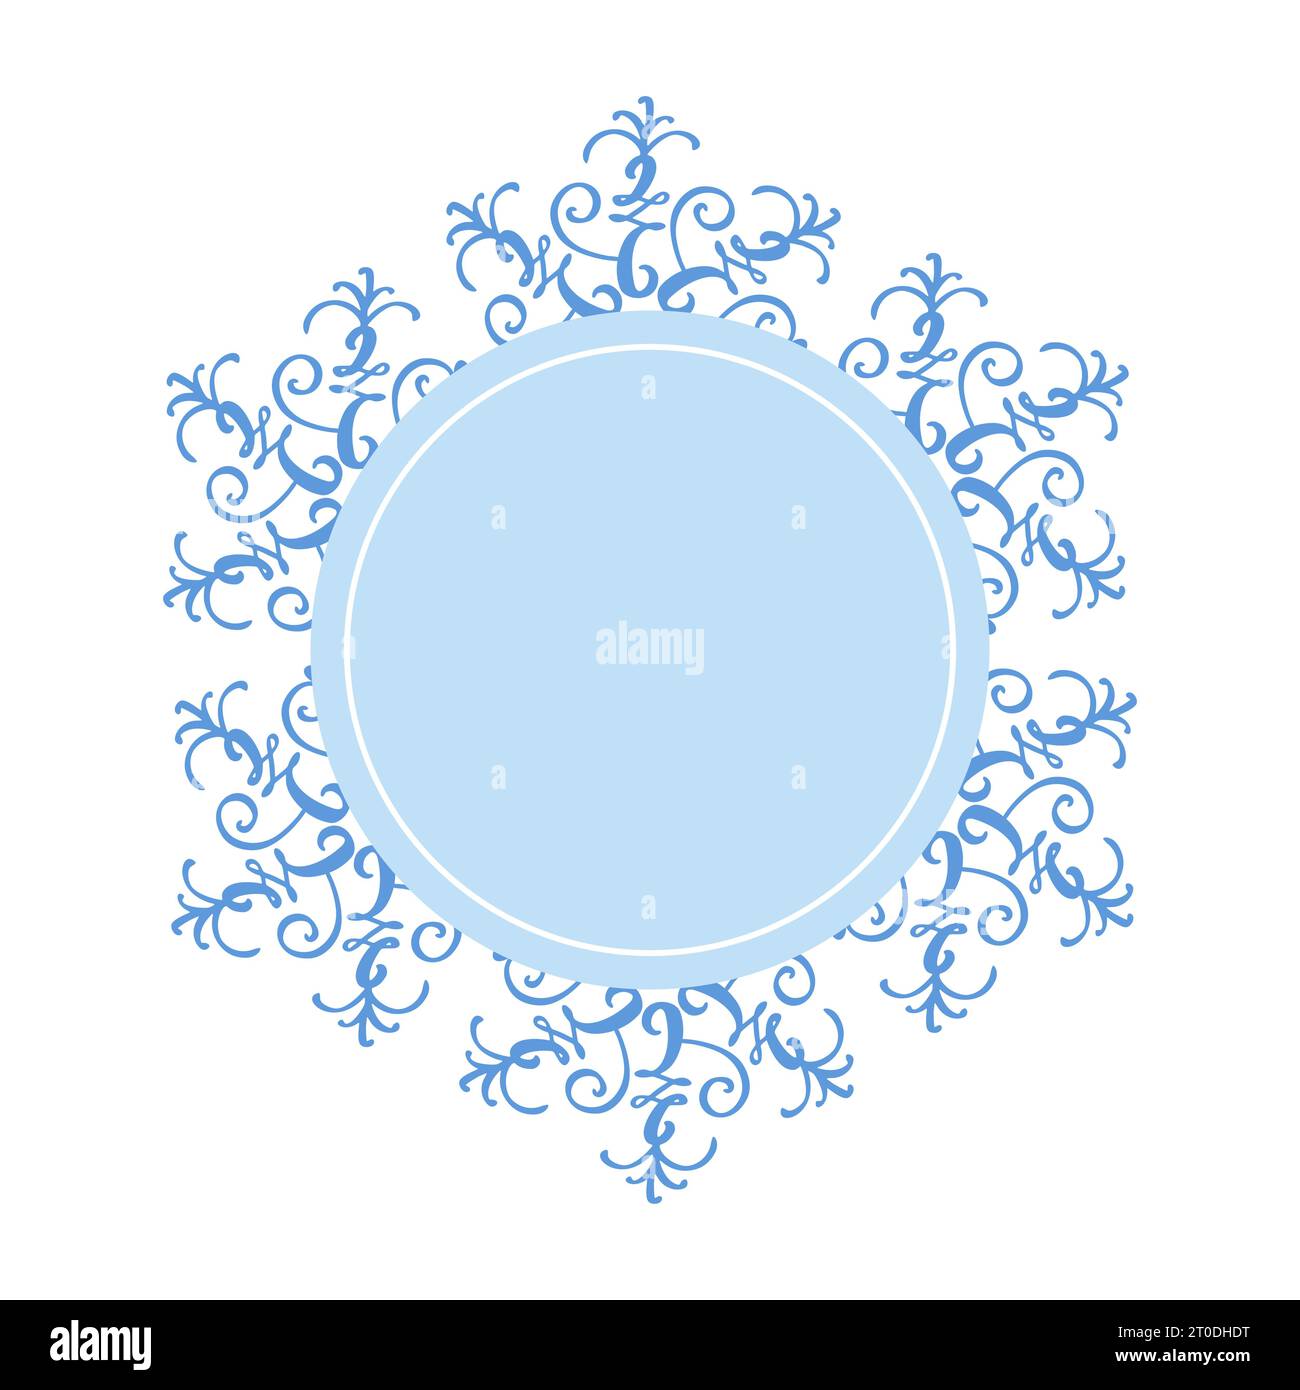 Cornice rotonda decorativa a fiocco di neve per Natale invernale con centro blu vuoto, decorata per biglietti di auguri, inviti, web design Illustrazione Vettoriale